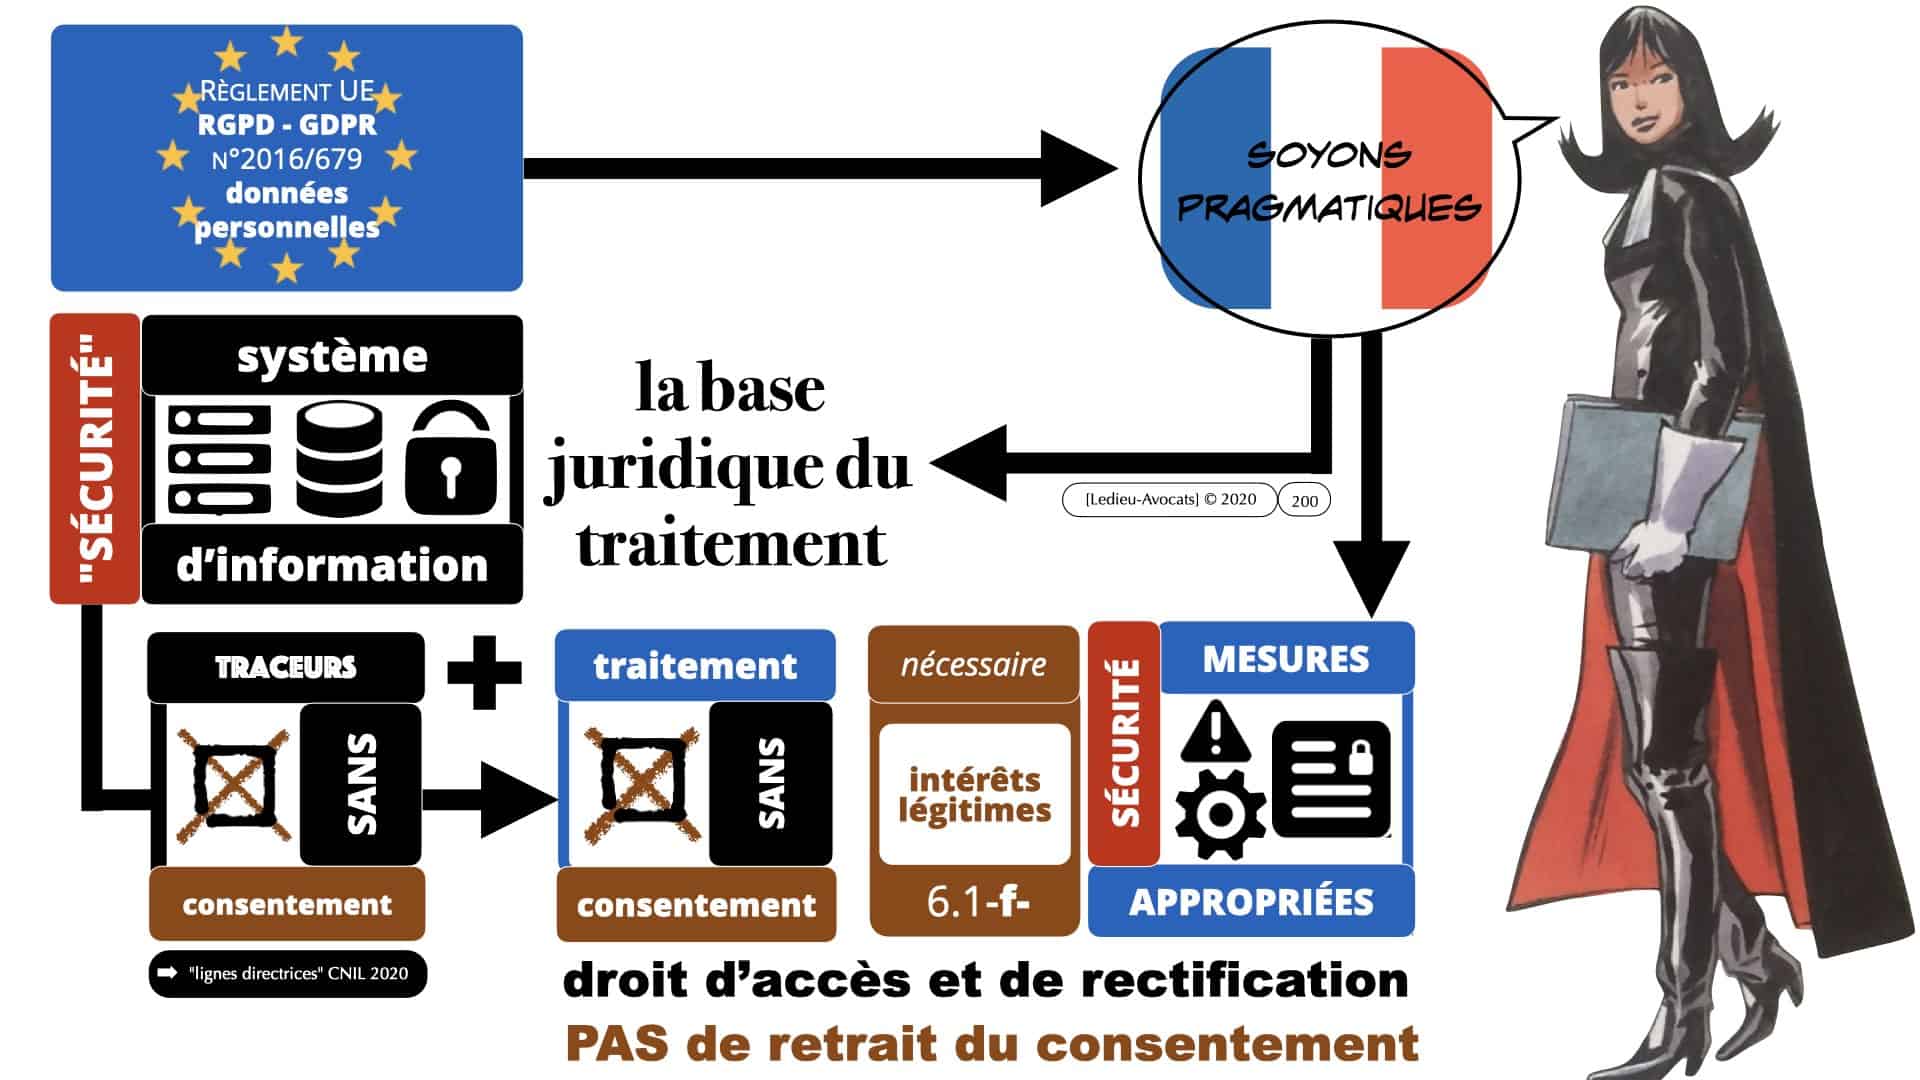 RGPD e-Privacy données personnelles jurisprudence formation Lamy Les Echos 10-02-2021 ©Ledieu-Avocats.200